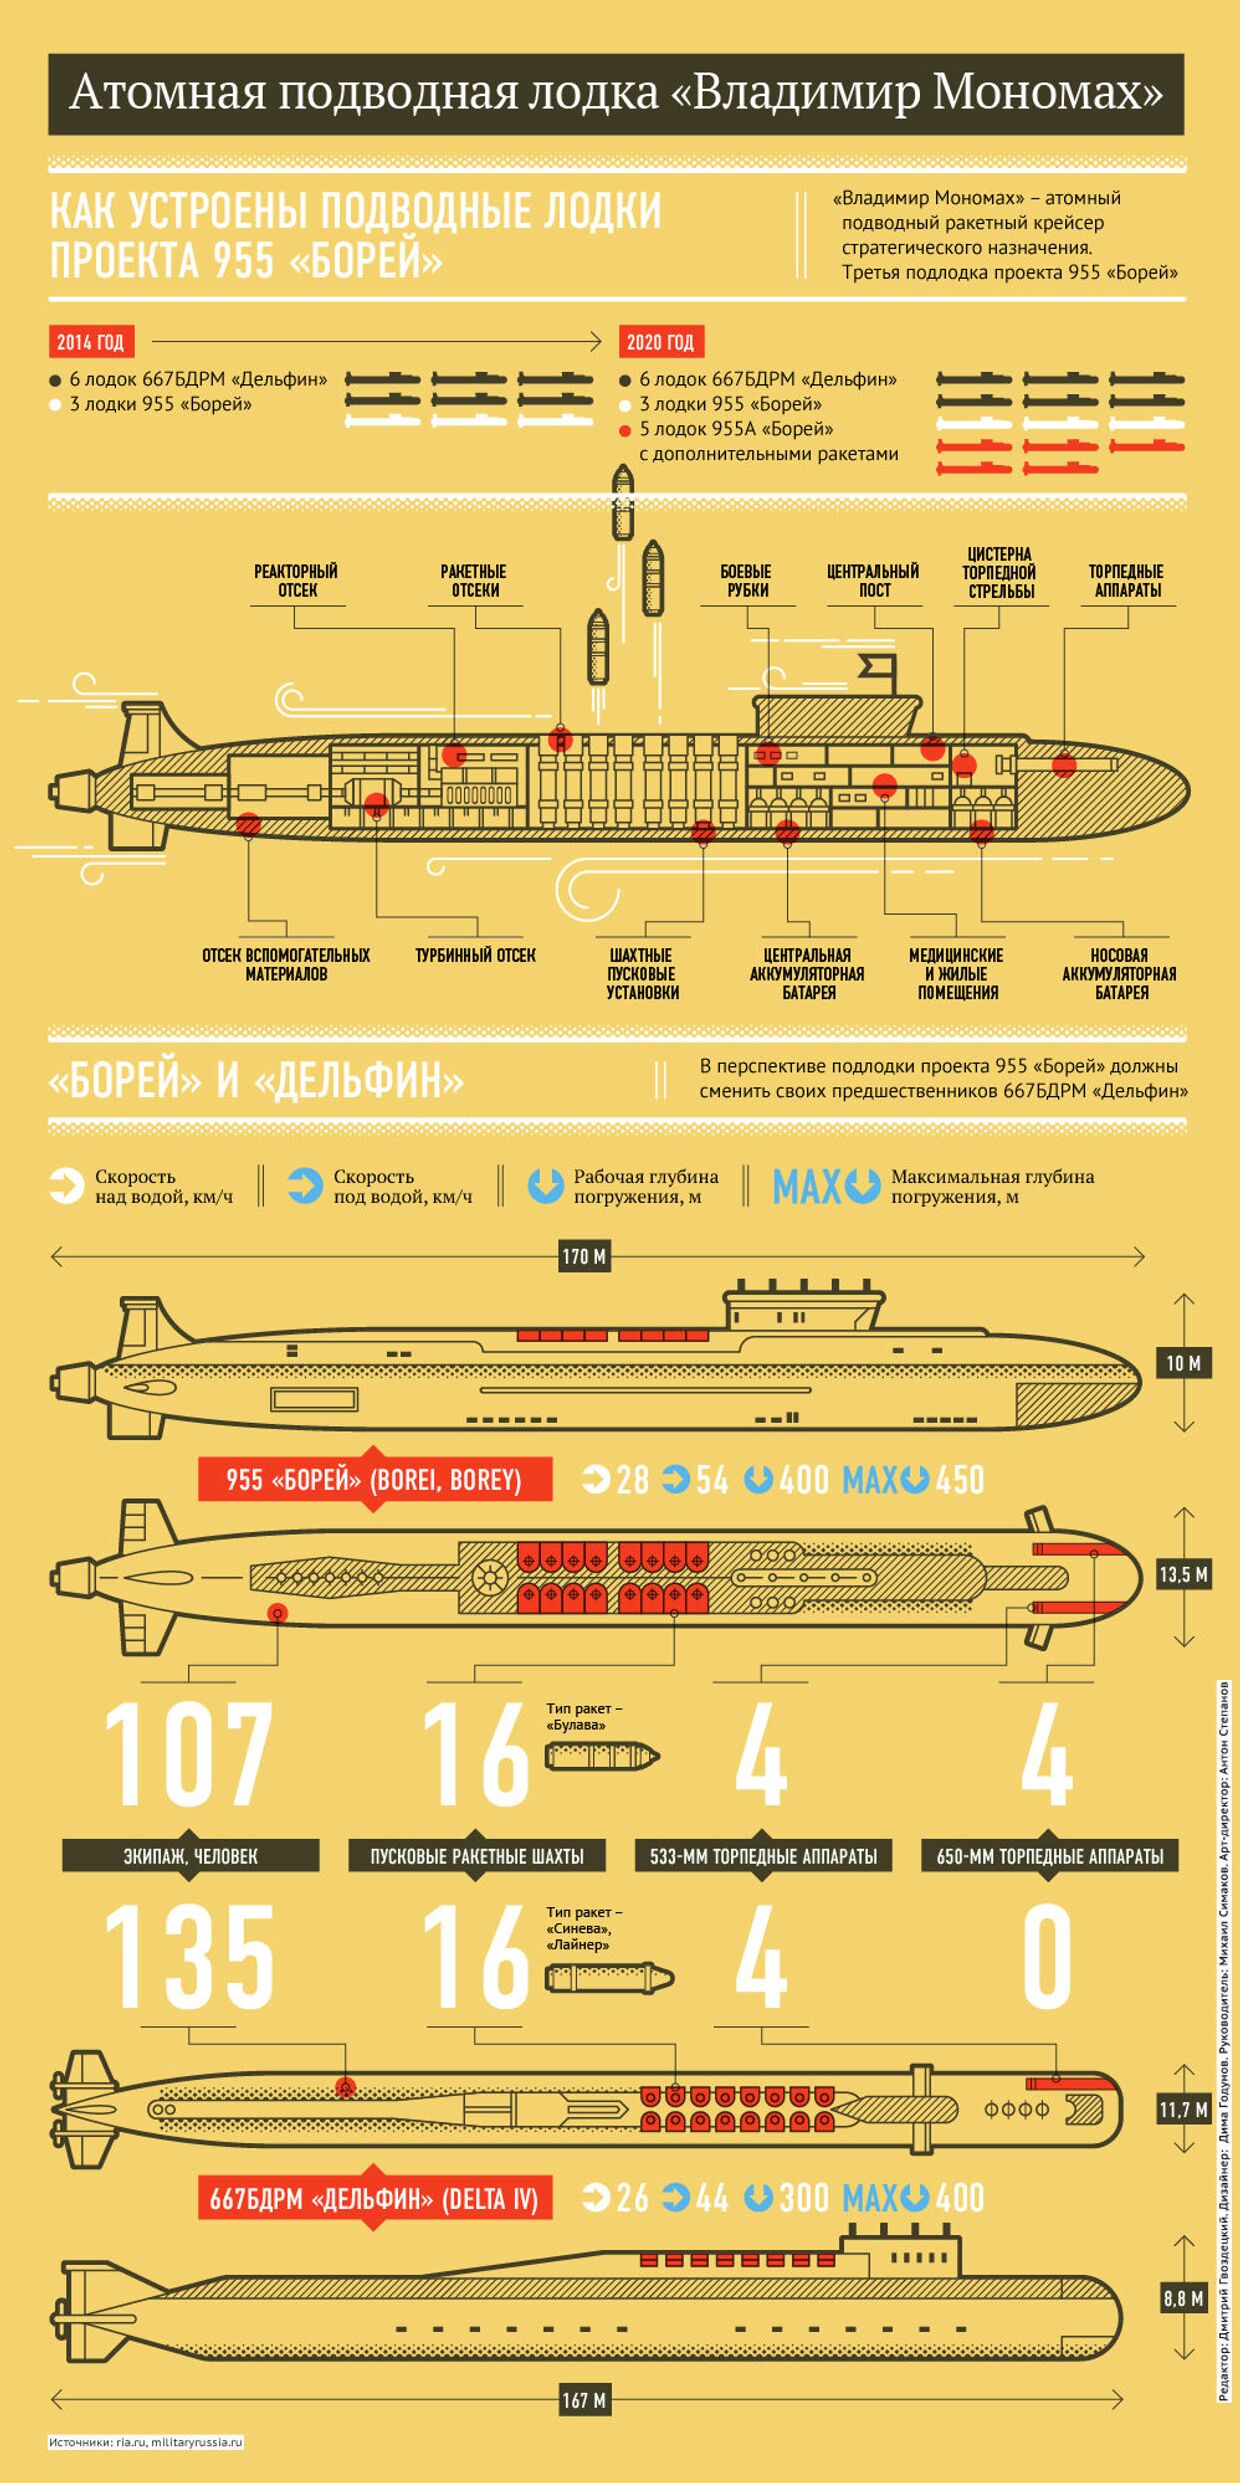 Атомная подводная лодка «Владимир Мономах»